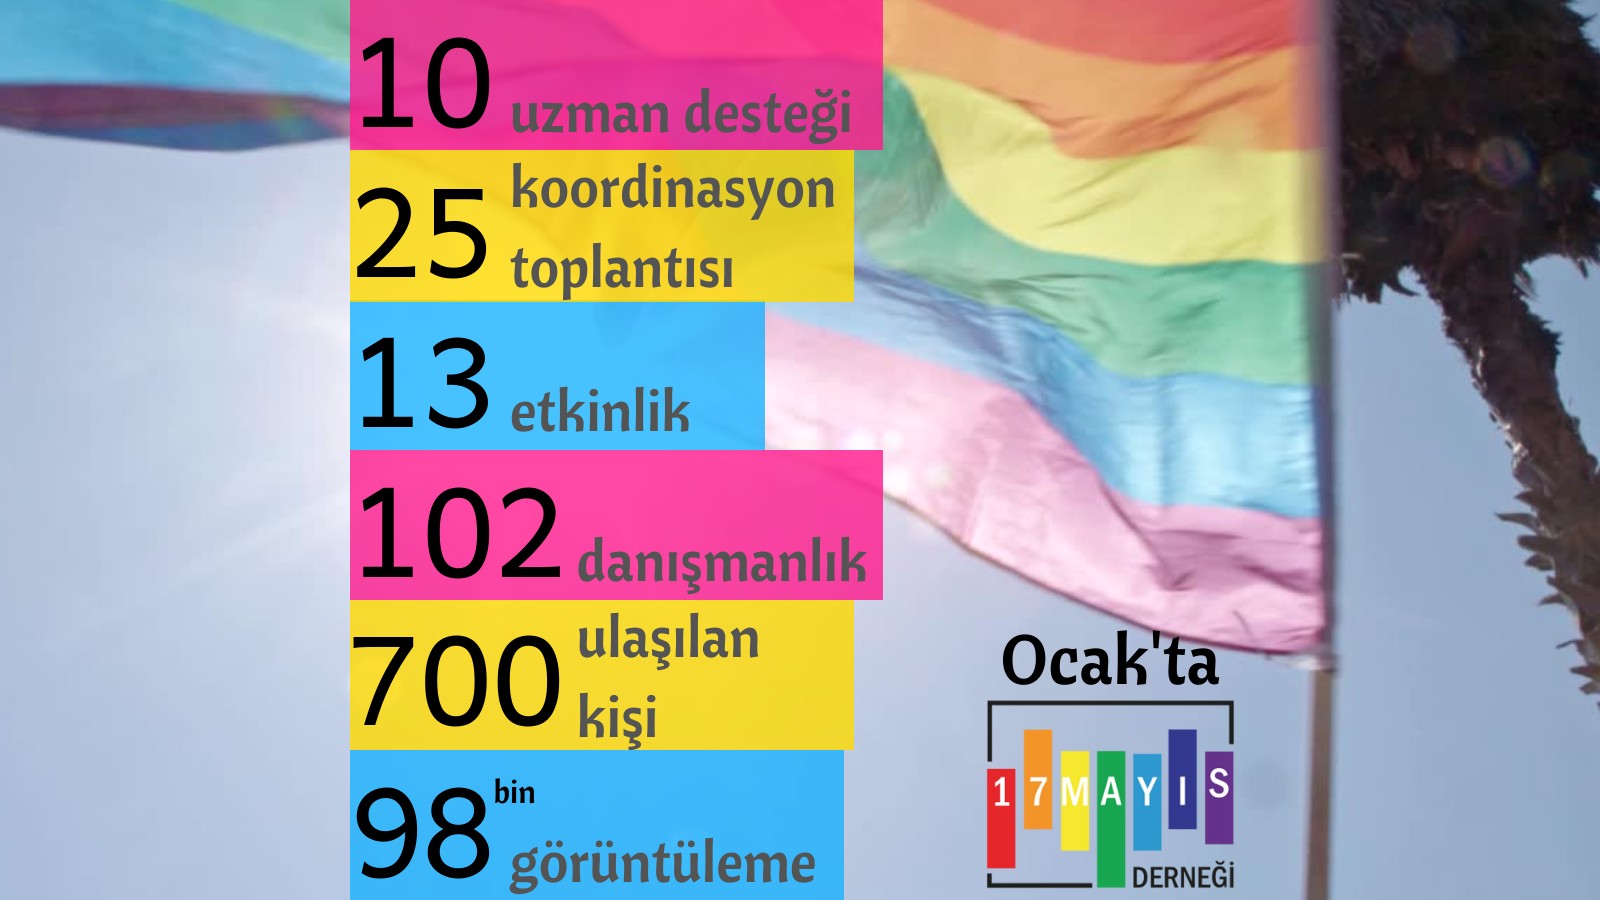 17 Mayıs Derneği Ocak’ta 38 etkinlik düzenledi, 102 kez danışmanlık verdi Kaos GL - LGBTİ+ Haber Portalı